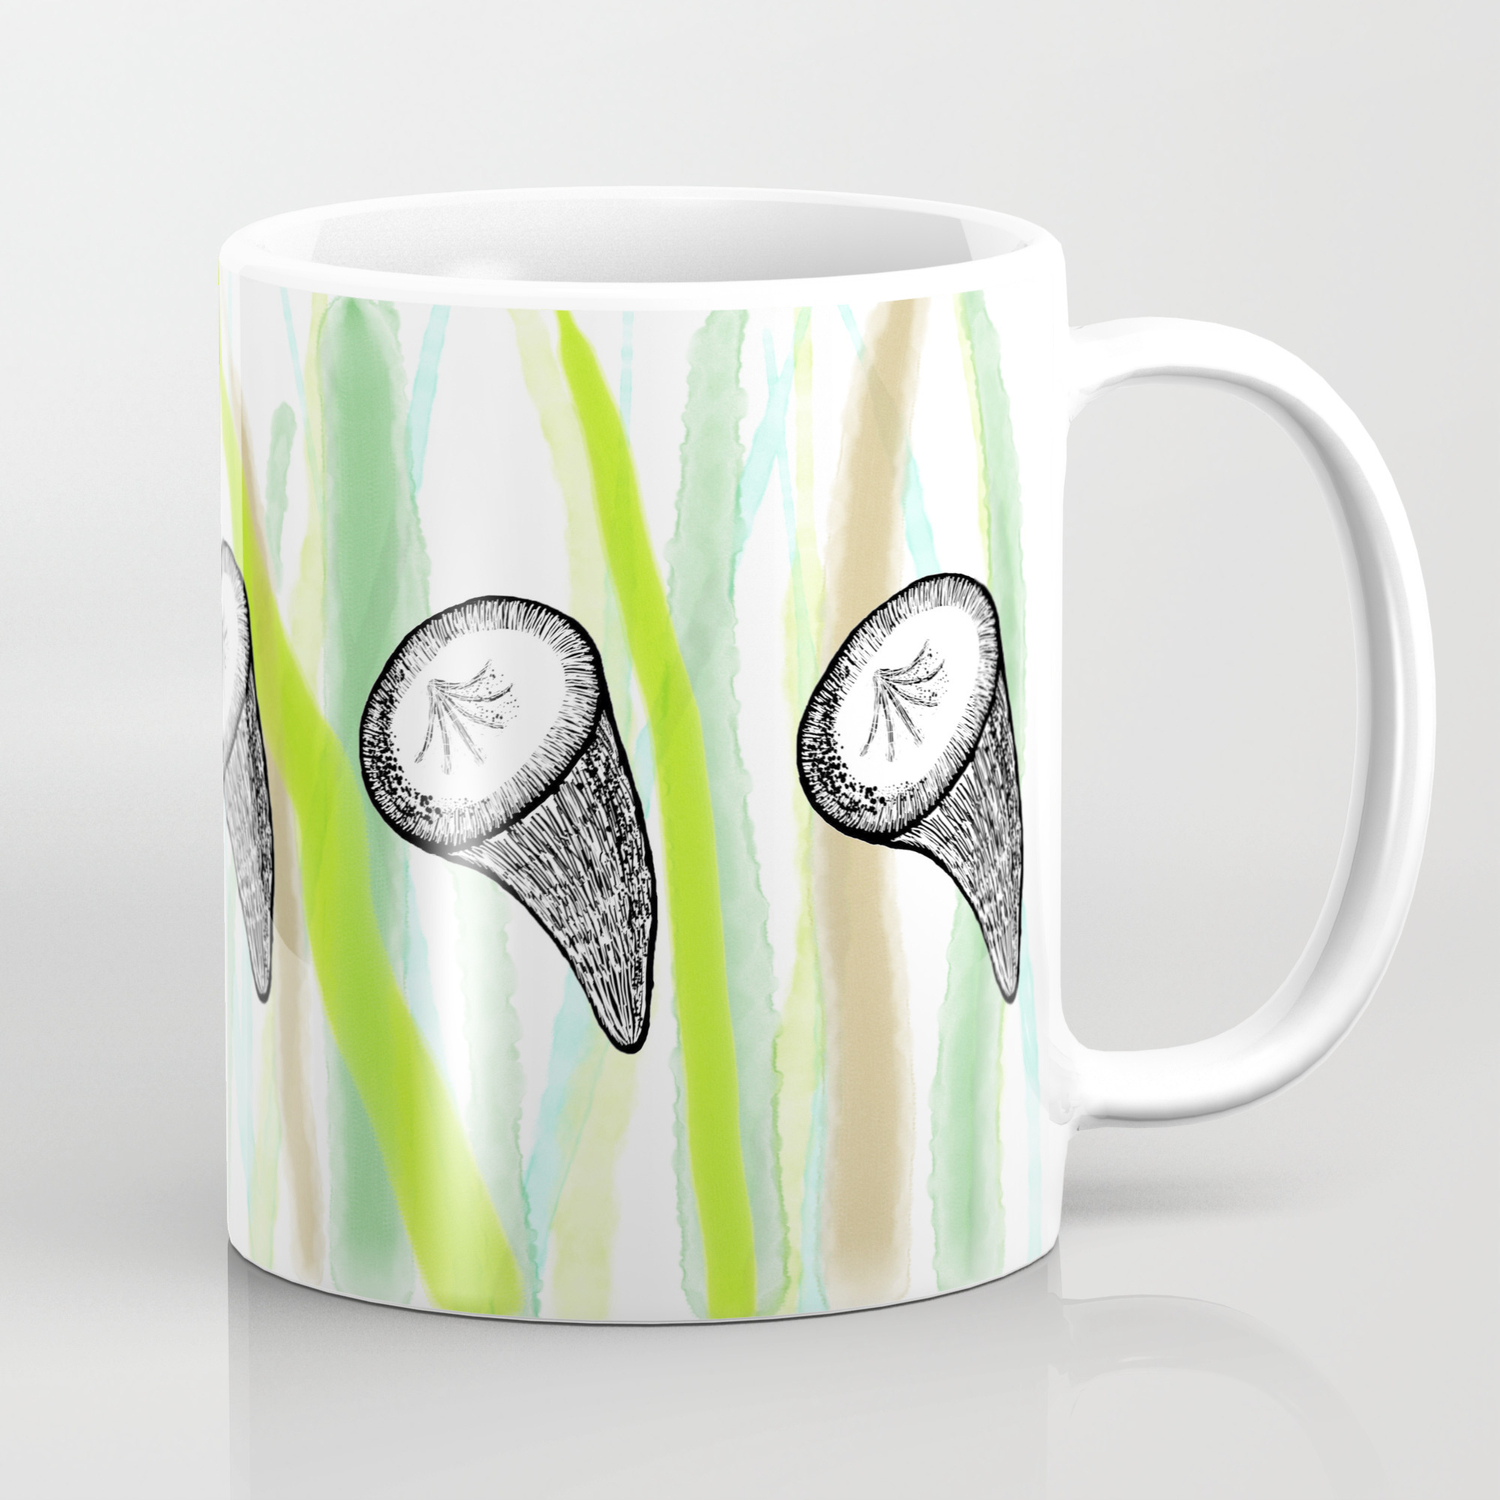 Fossil Cup Coral Coffee Mug by Åsa Stenström | Society6